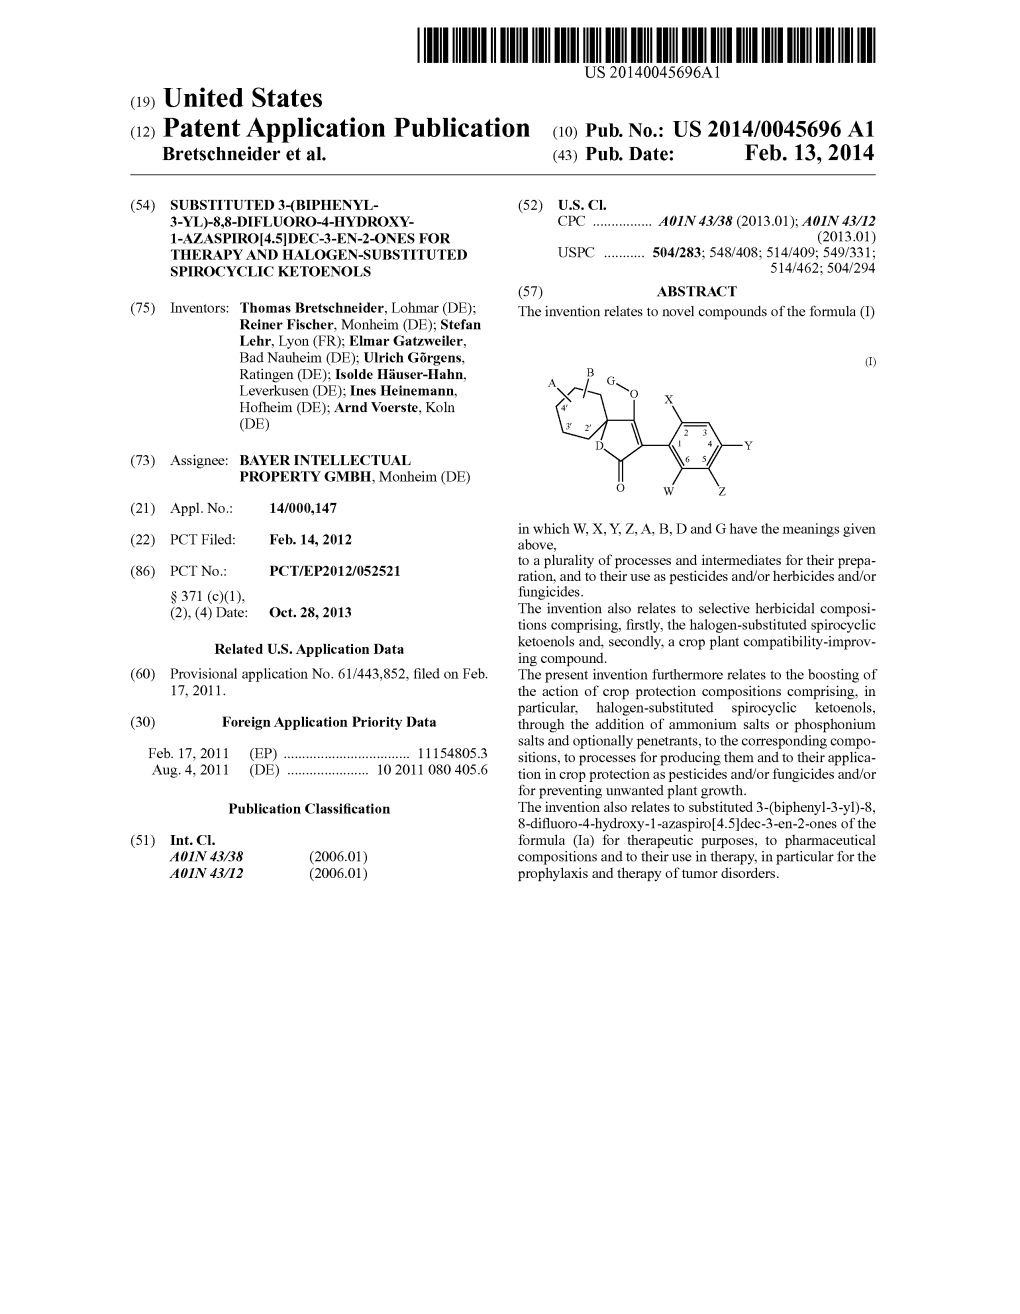 (12) Patent Application Publication (10) Pub. No.: US 2014/0045696A1 Bretschneider Et Al